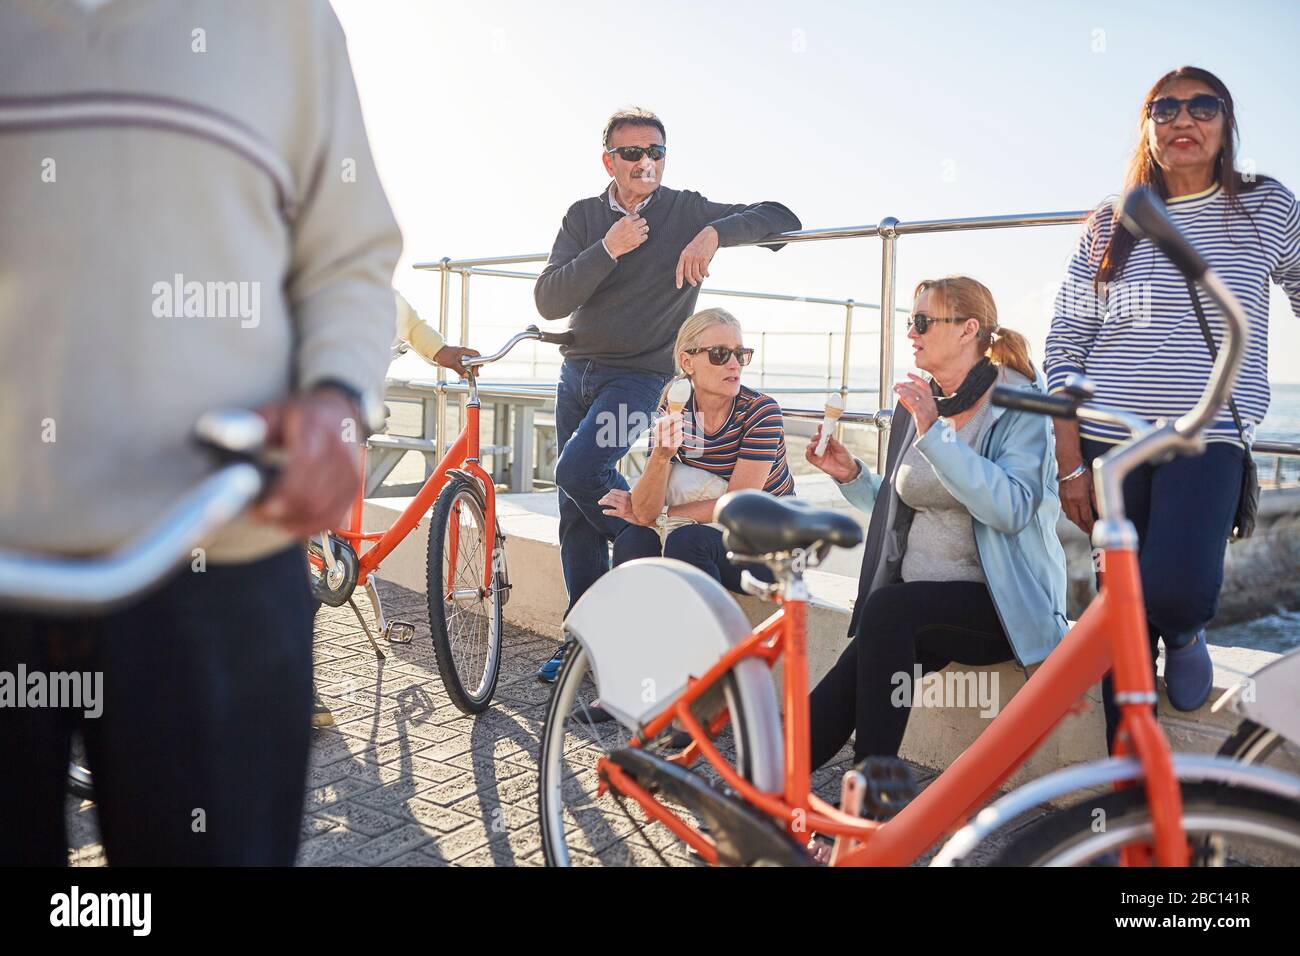 Aktive Seniorentouristen mit Fahrrädern, die Eis essen Stockfoto